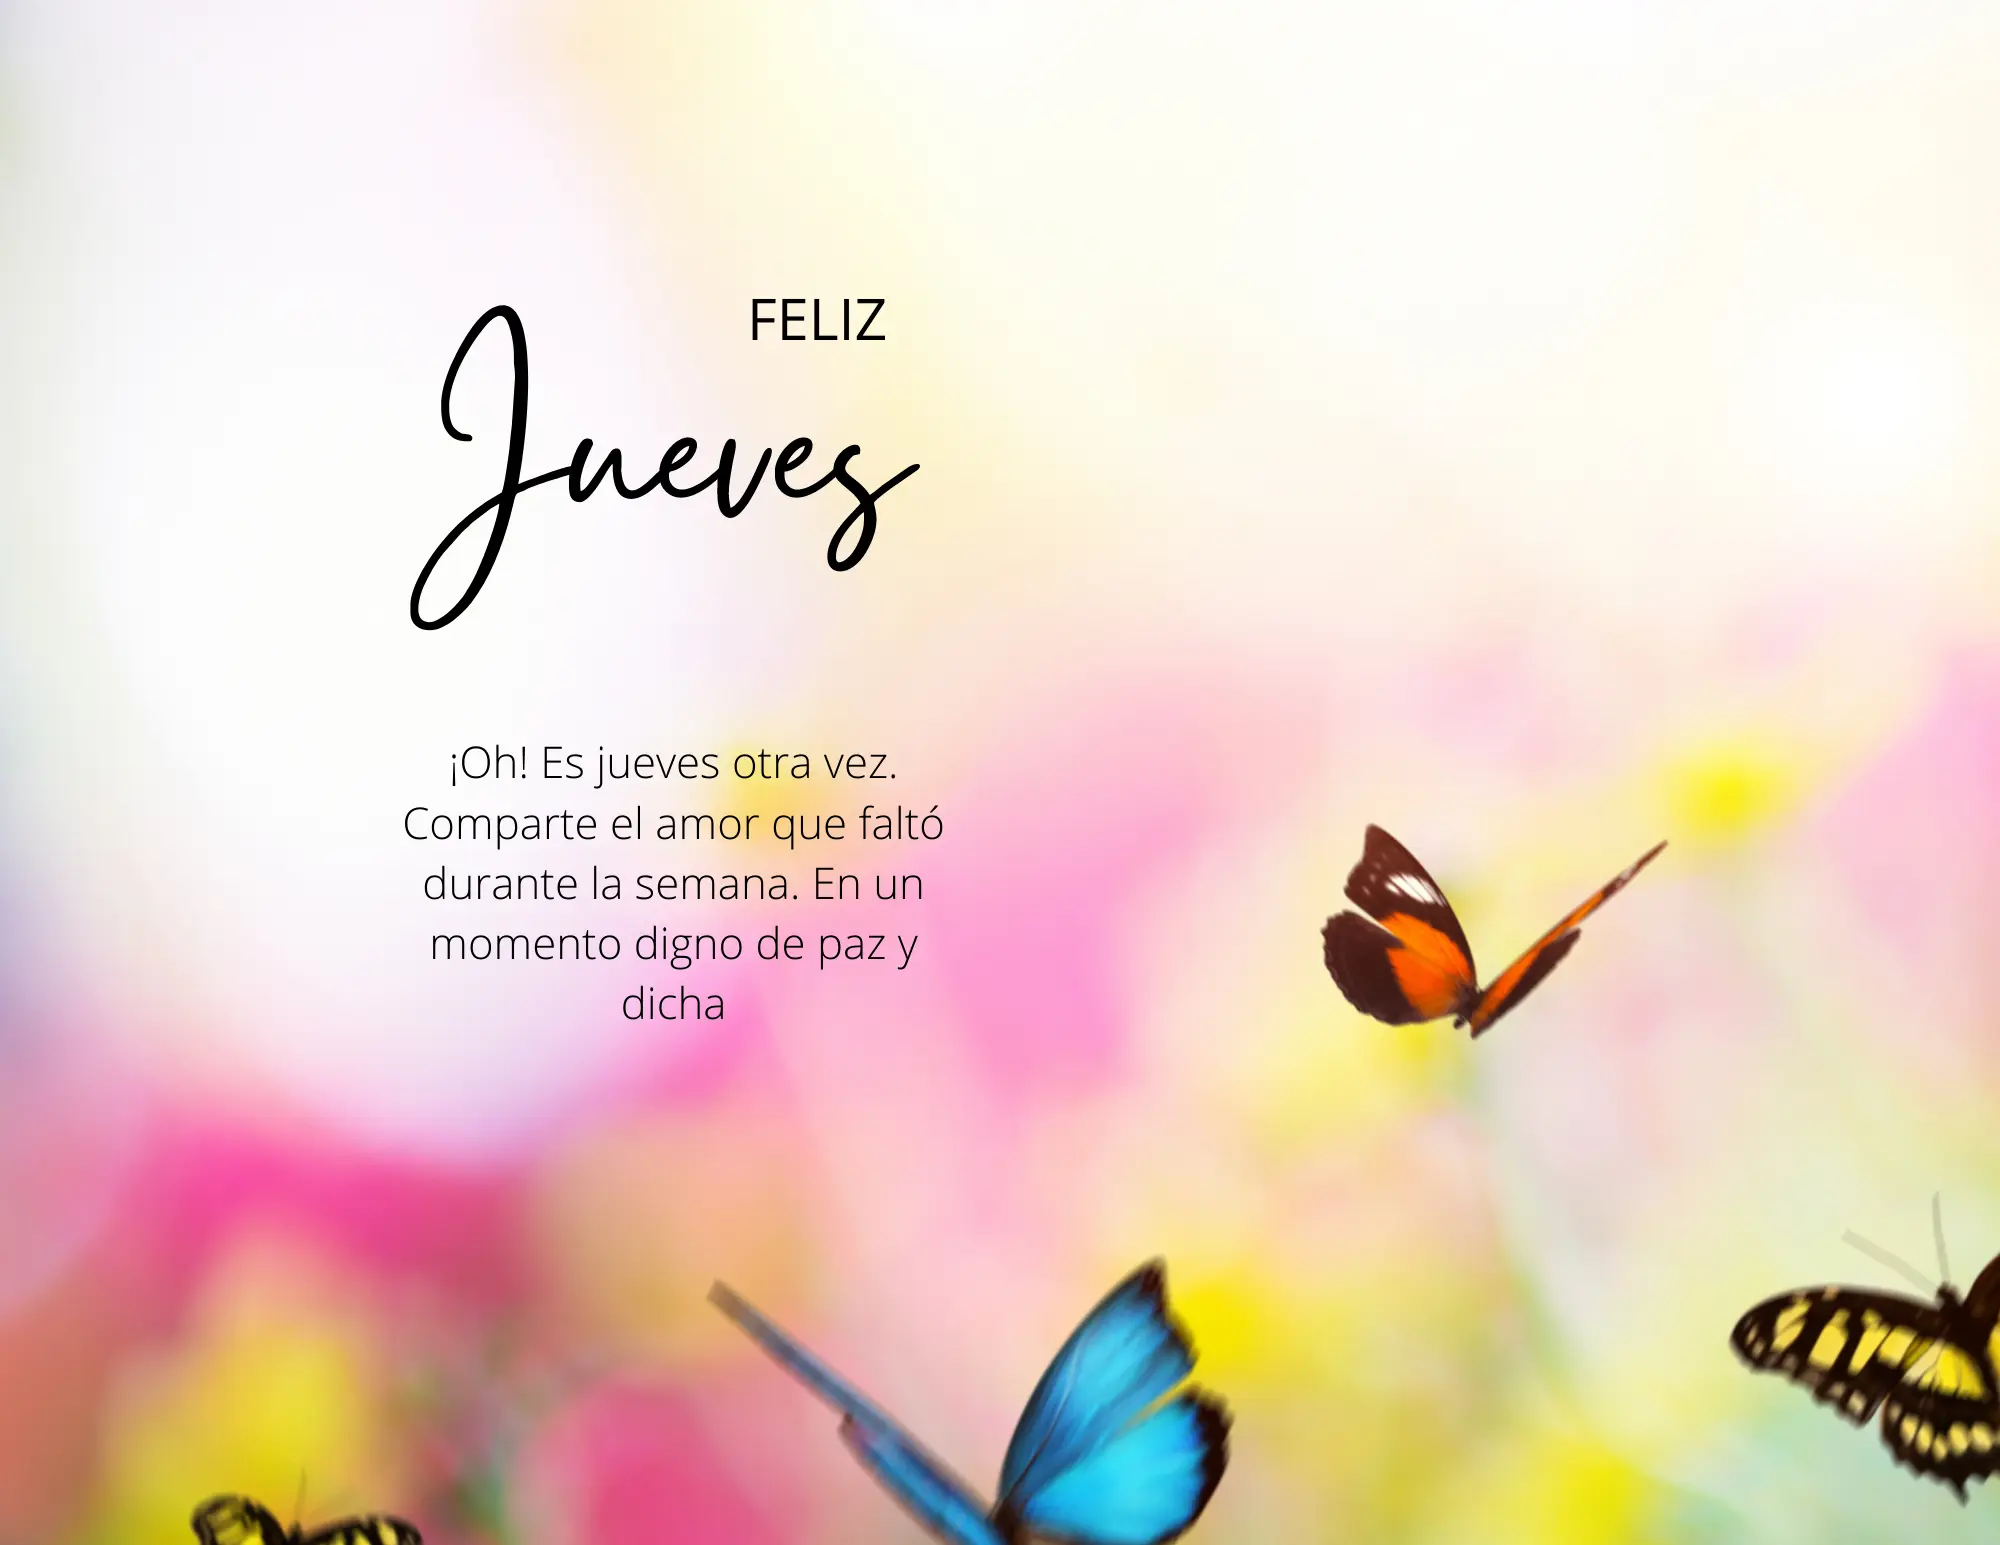 Una imagen vibrante que dice "Feliz Jueves" de fondo llena de mariposas de colores.